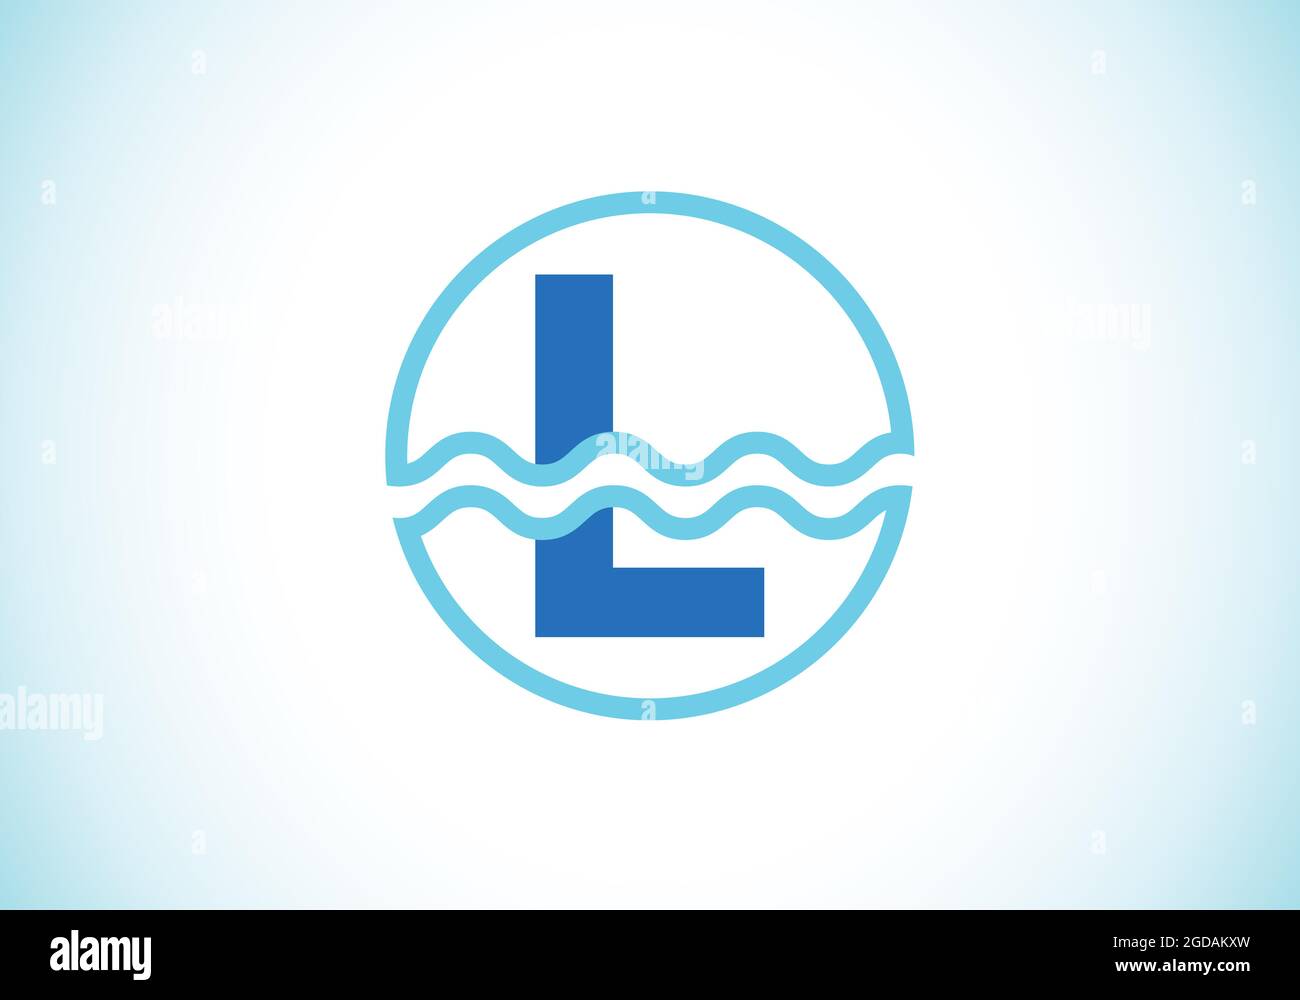 Lettre L initiale du monogramme dans un cercle avec des vagues d'eau. Logo vague d'eau. Logo pour l'océan, les affaires liées à la mer et l'identité de l'entreprise Illustration de Vecteur